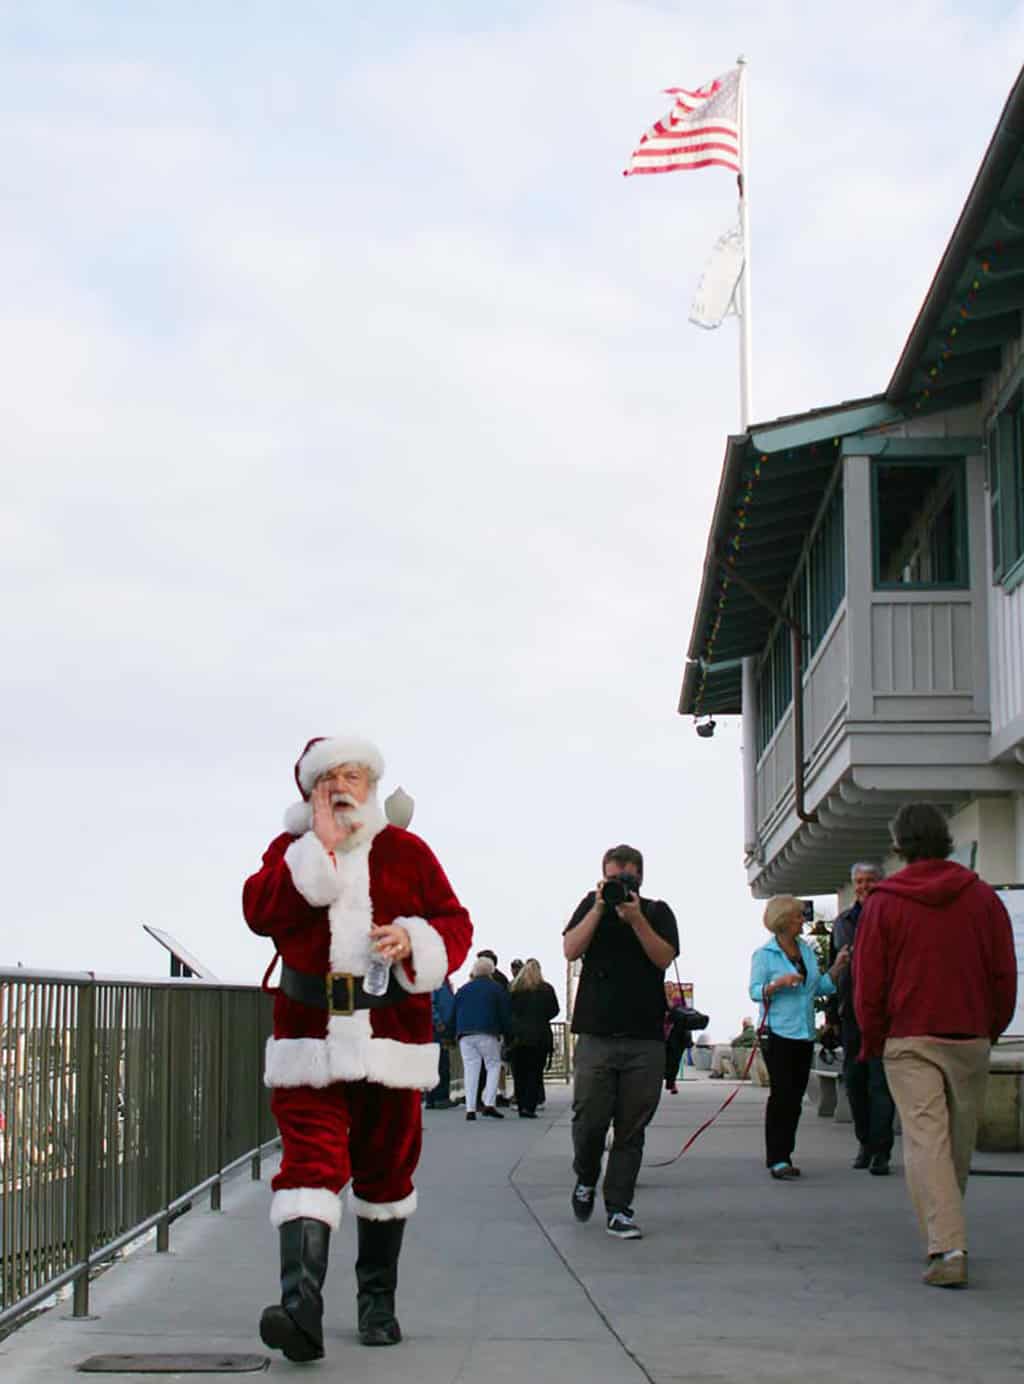 Santa Claus at the Parade of Boats in Santa Barbara at Christmas